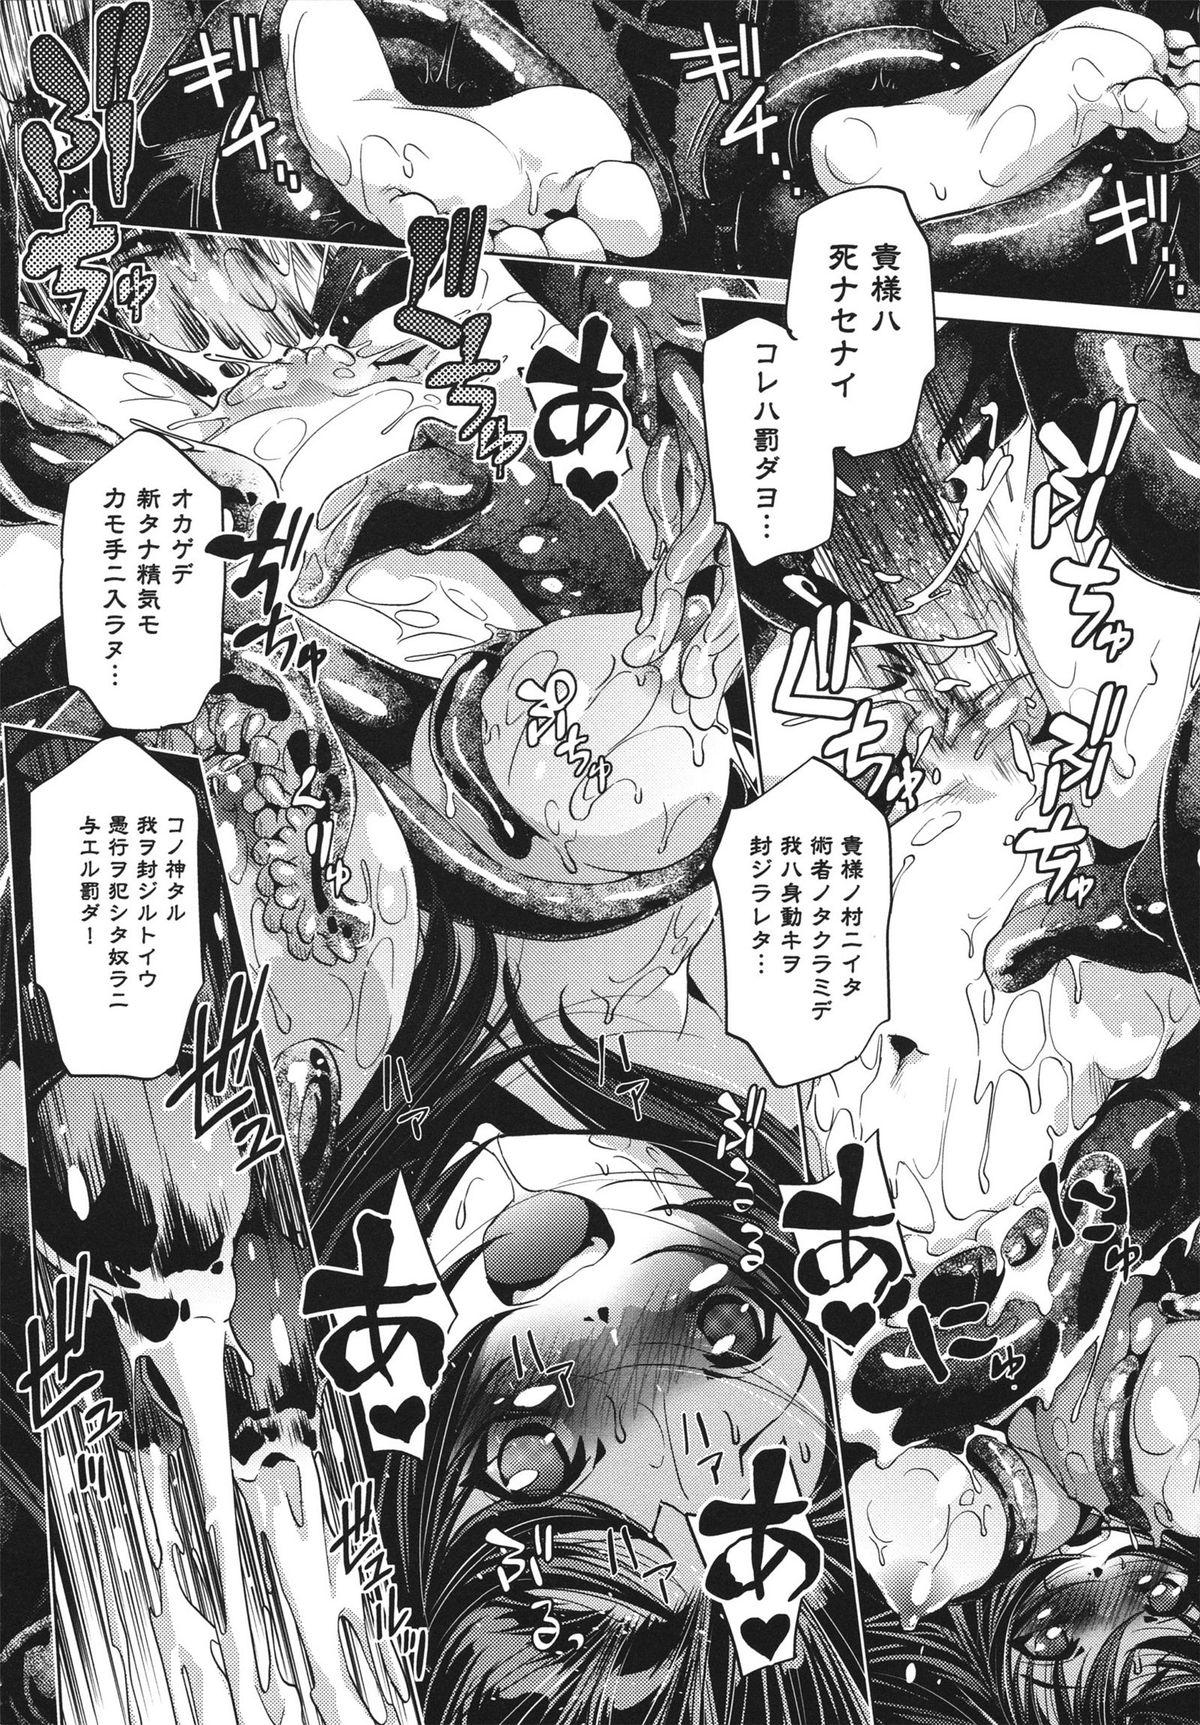 [Ootori Ryuuji] Shokushu wa Yawarakana Chibusa ni Makitsuki Onna-tachi no Ana wo Kakimidasu - Feeler coils around a soft breast and violates women's hole. 49